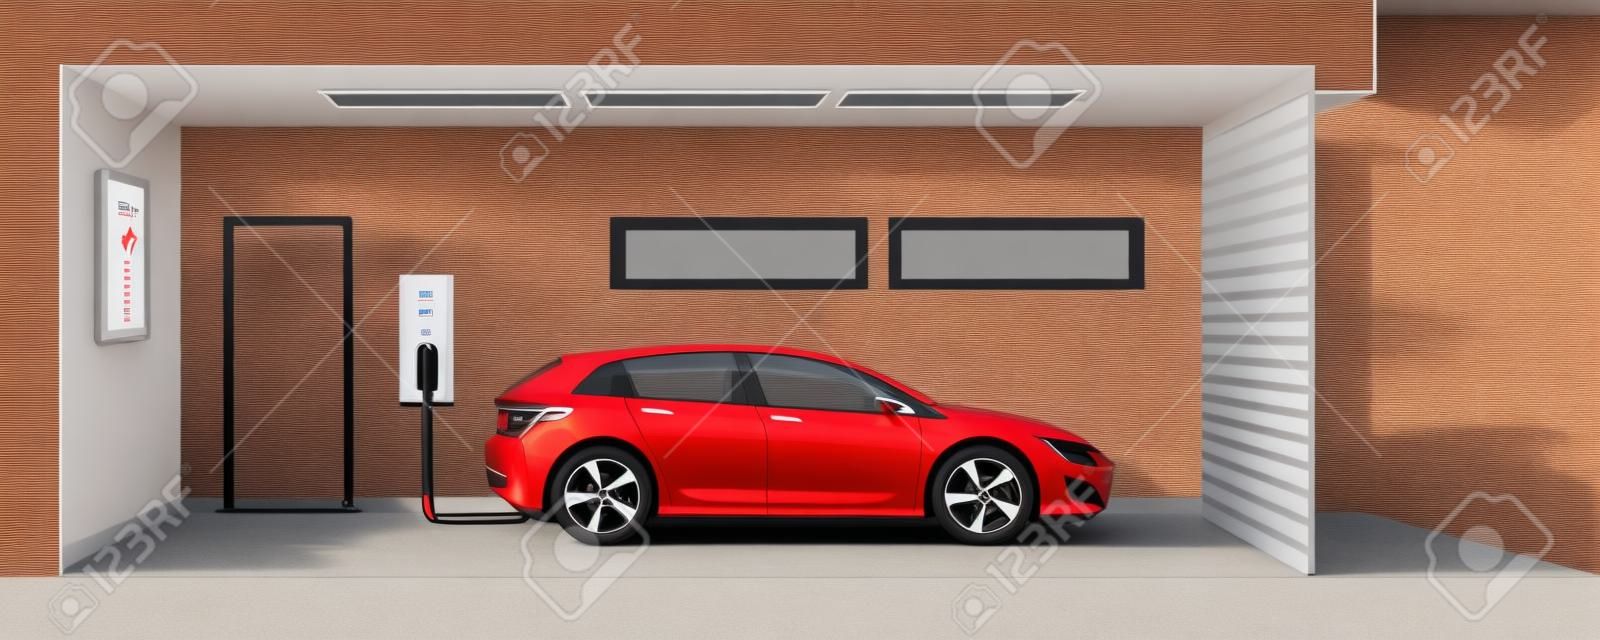 illustrazione piatta di un auto elettrica rossa di ricarica presso il punto di stazione caricabatterie all'interno del garage di casa. Integrato concetto di e-motion intelligente mobilità elettrica domestica.